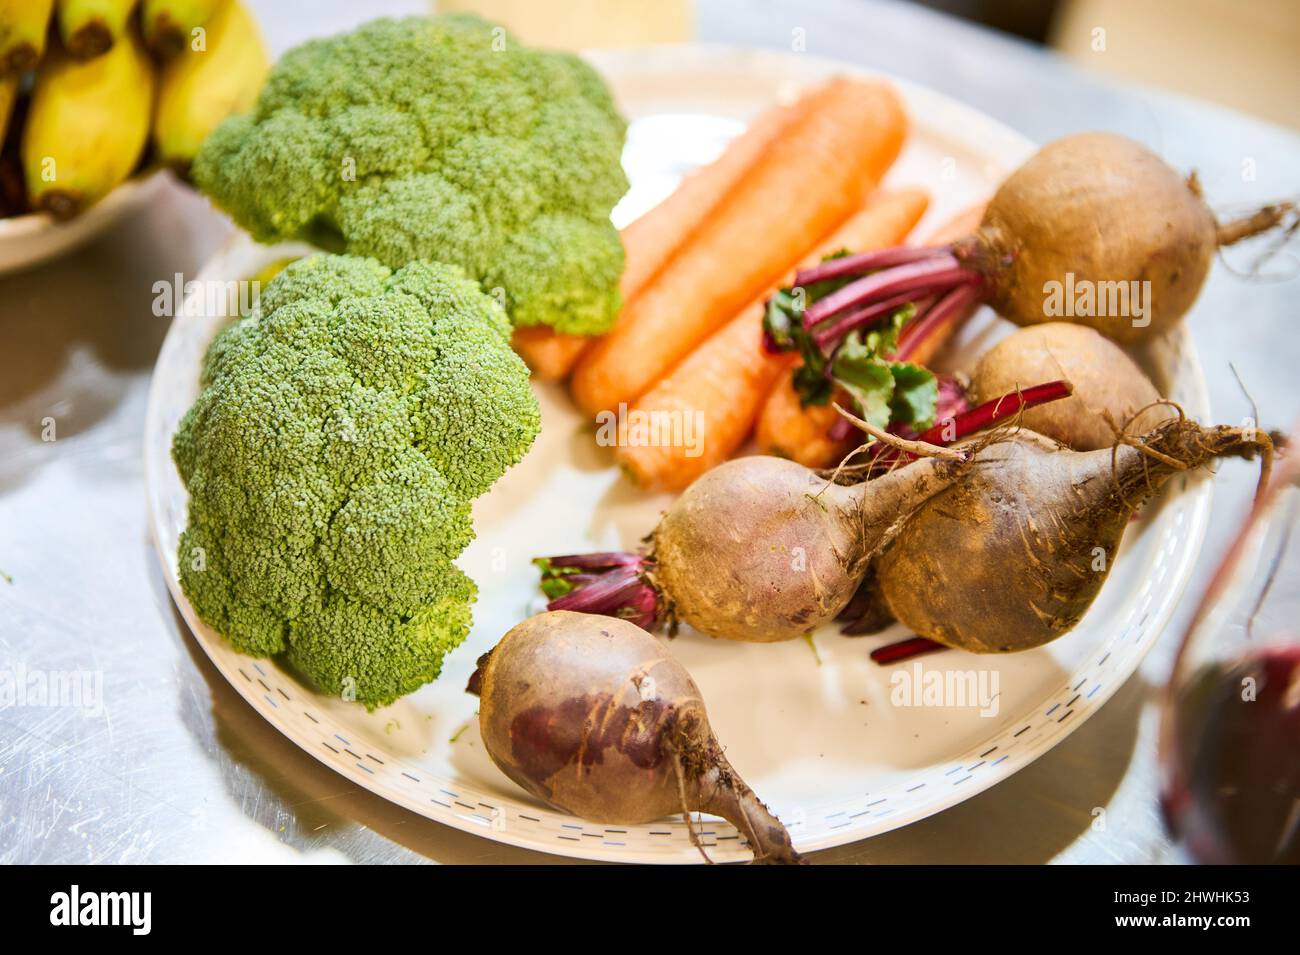 Piatto con broccoli, barbabietole e altri ingredienti in cucina Foto Stock